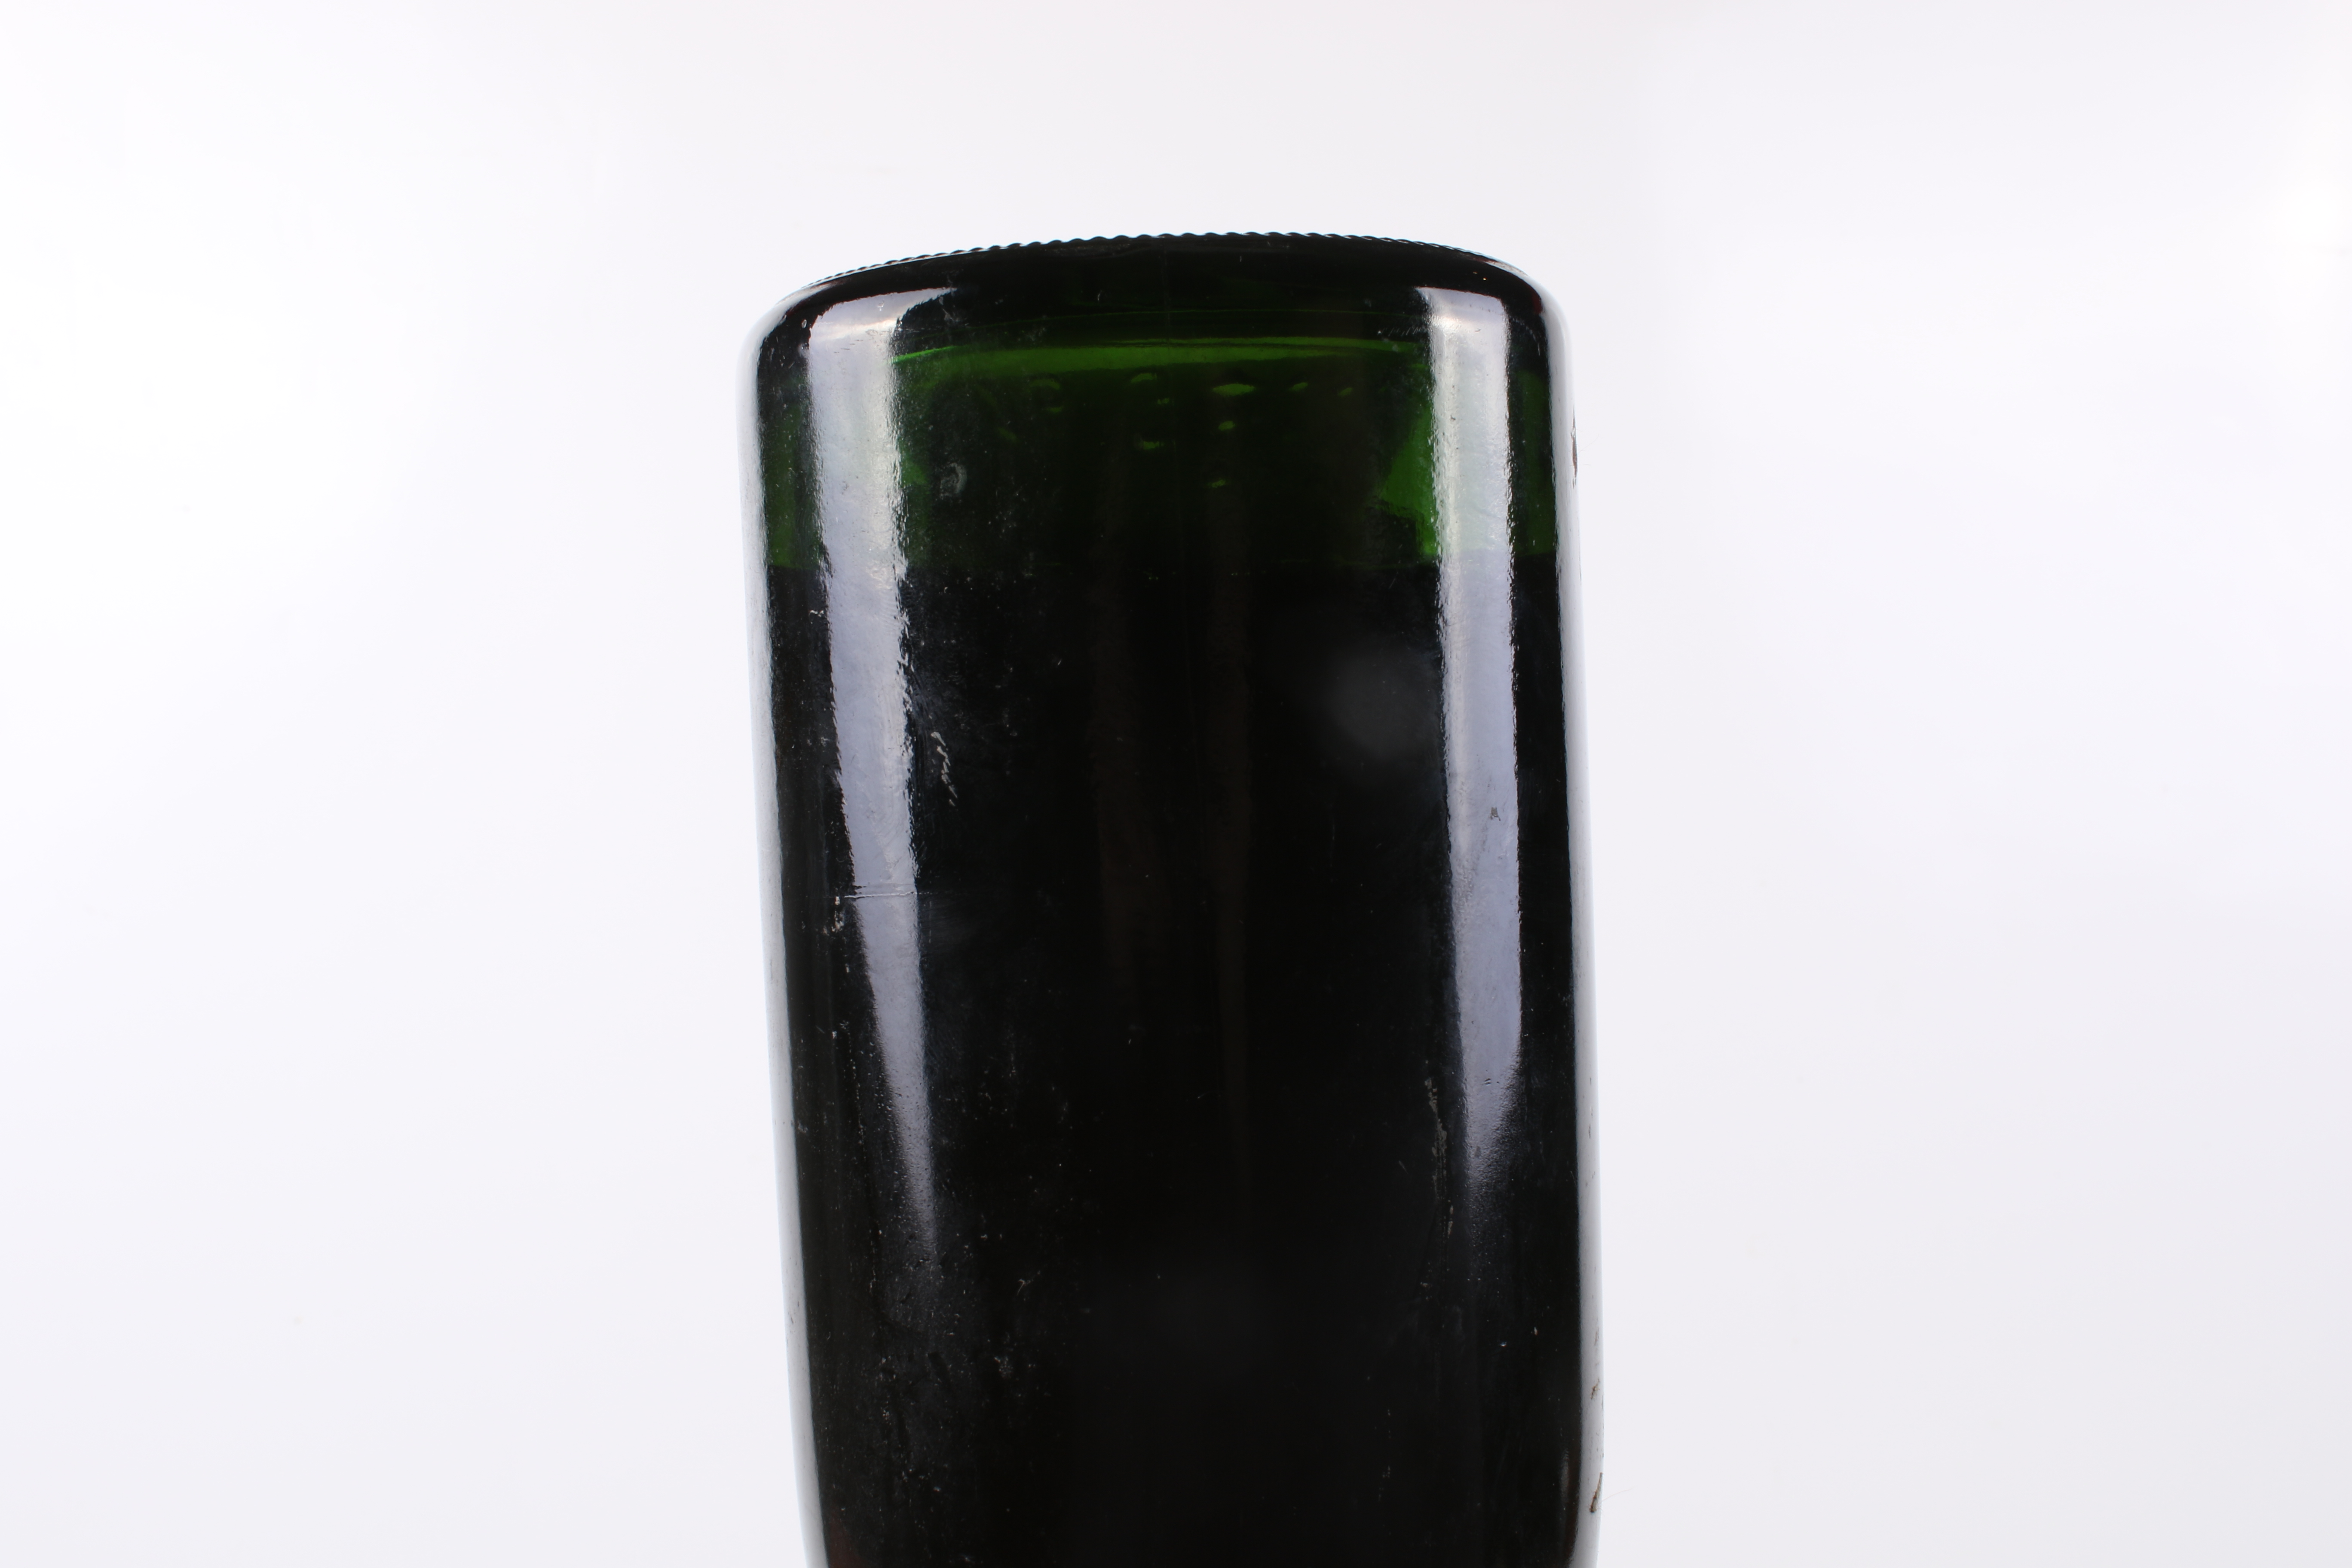 A bottle of Krug Reims Champagne 1966 vintage. - Image 4 of 4